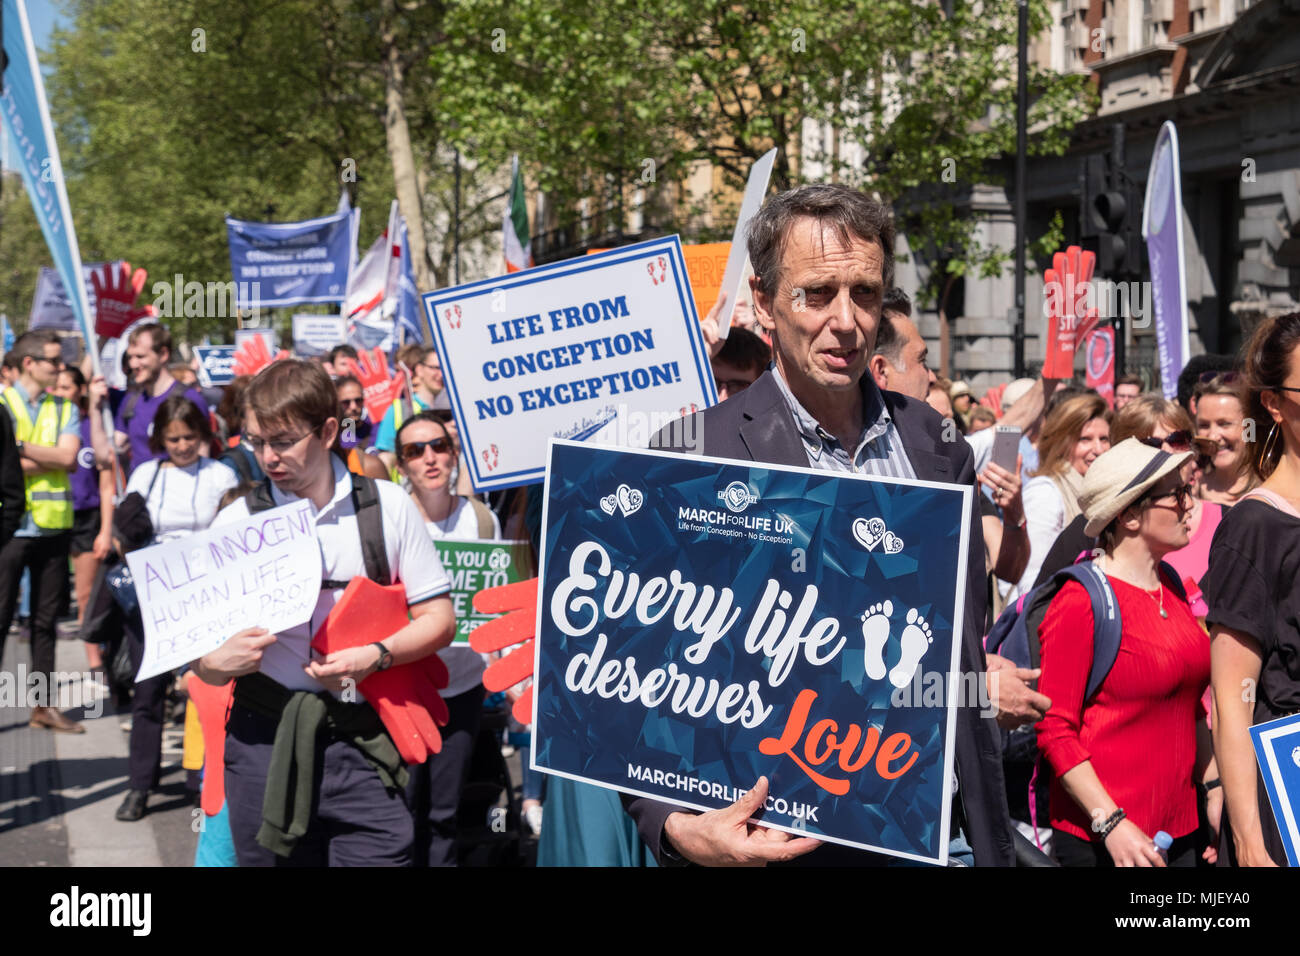 Londres, Royaume-Uni, 5 mai 2018, les membres de la Marche pour la vie UK a organisé une marche à travers le centre de Londres. Un homme détient un chaque vie mérite amour placard Crédit : Adrian mabe/Alamy Live News Banque D'Images